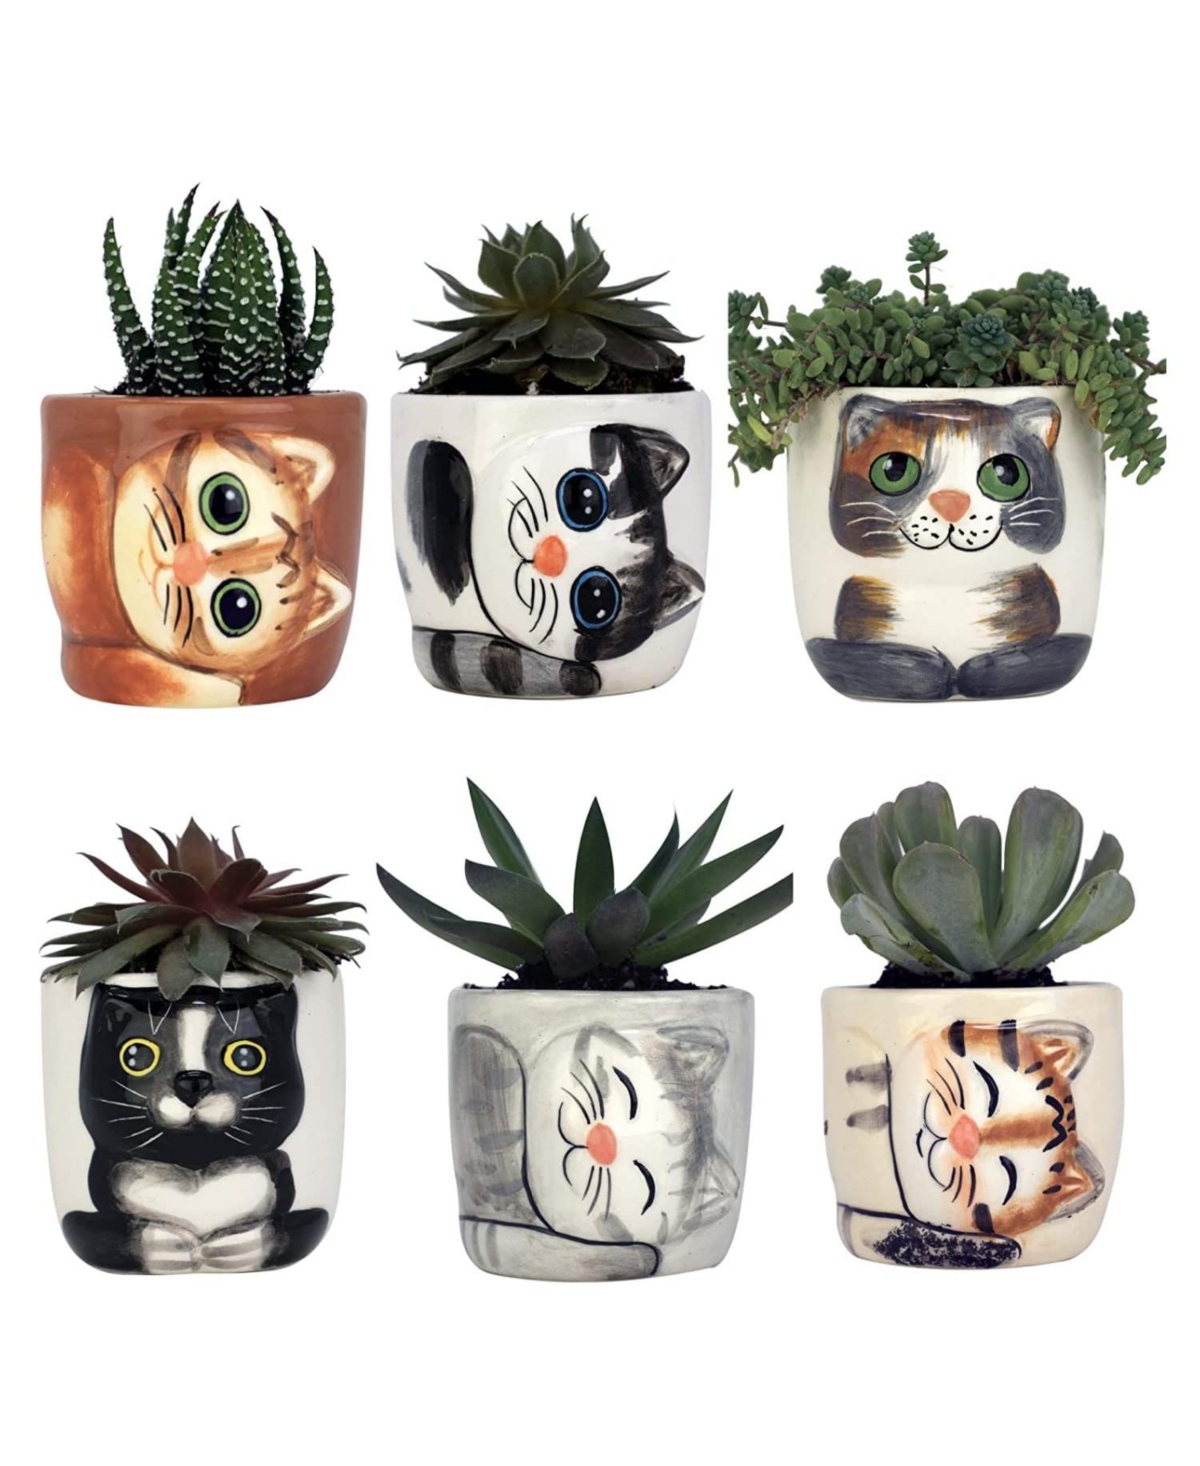 Cute Cat Planter Pot - 6 Mini 3" Succulent Kitty Pots - Cute Flower Pots for Indoor Plants - Cat Decor Vase for Cactus, Herb - Cat, Cat